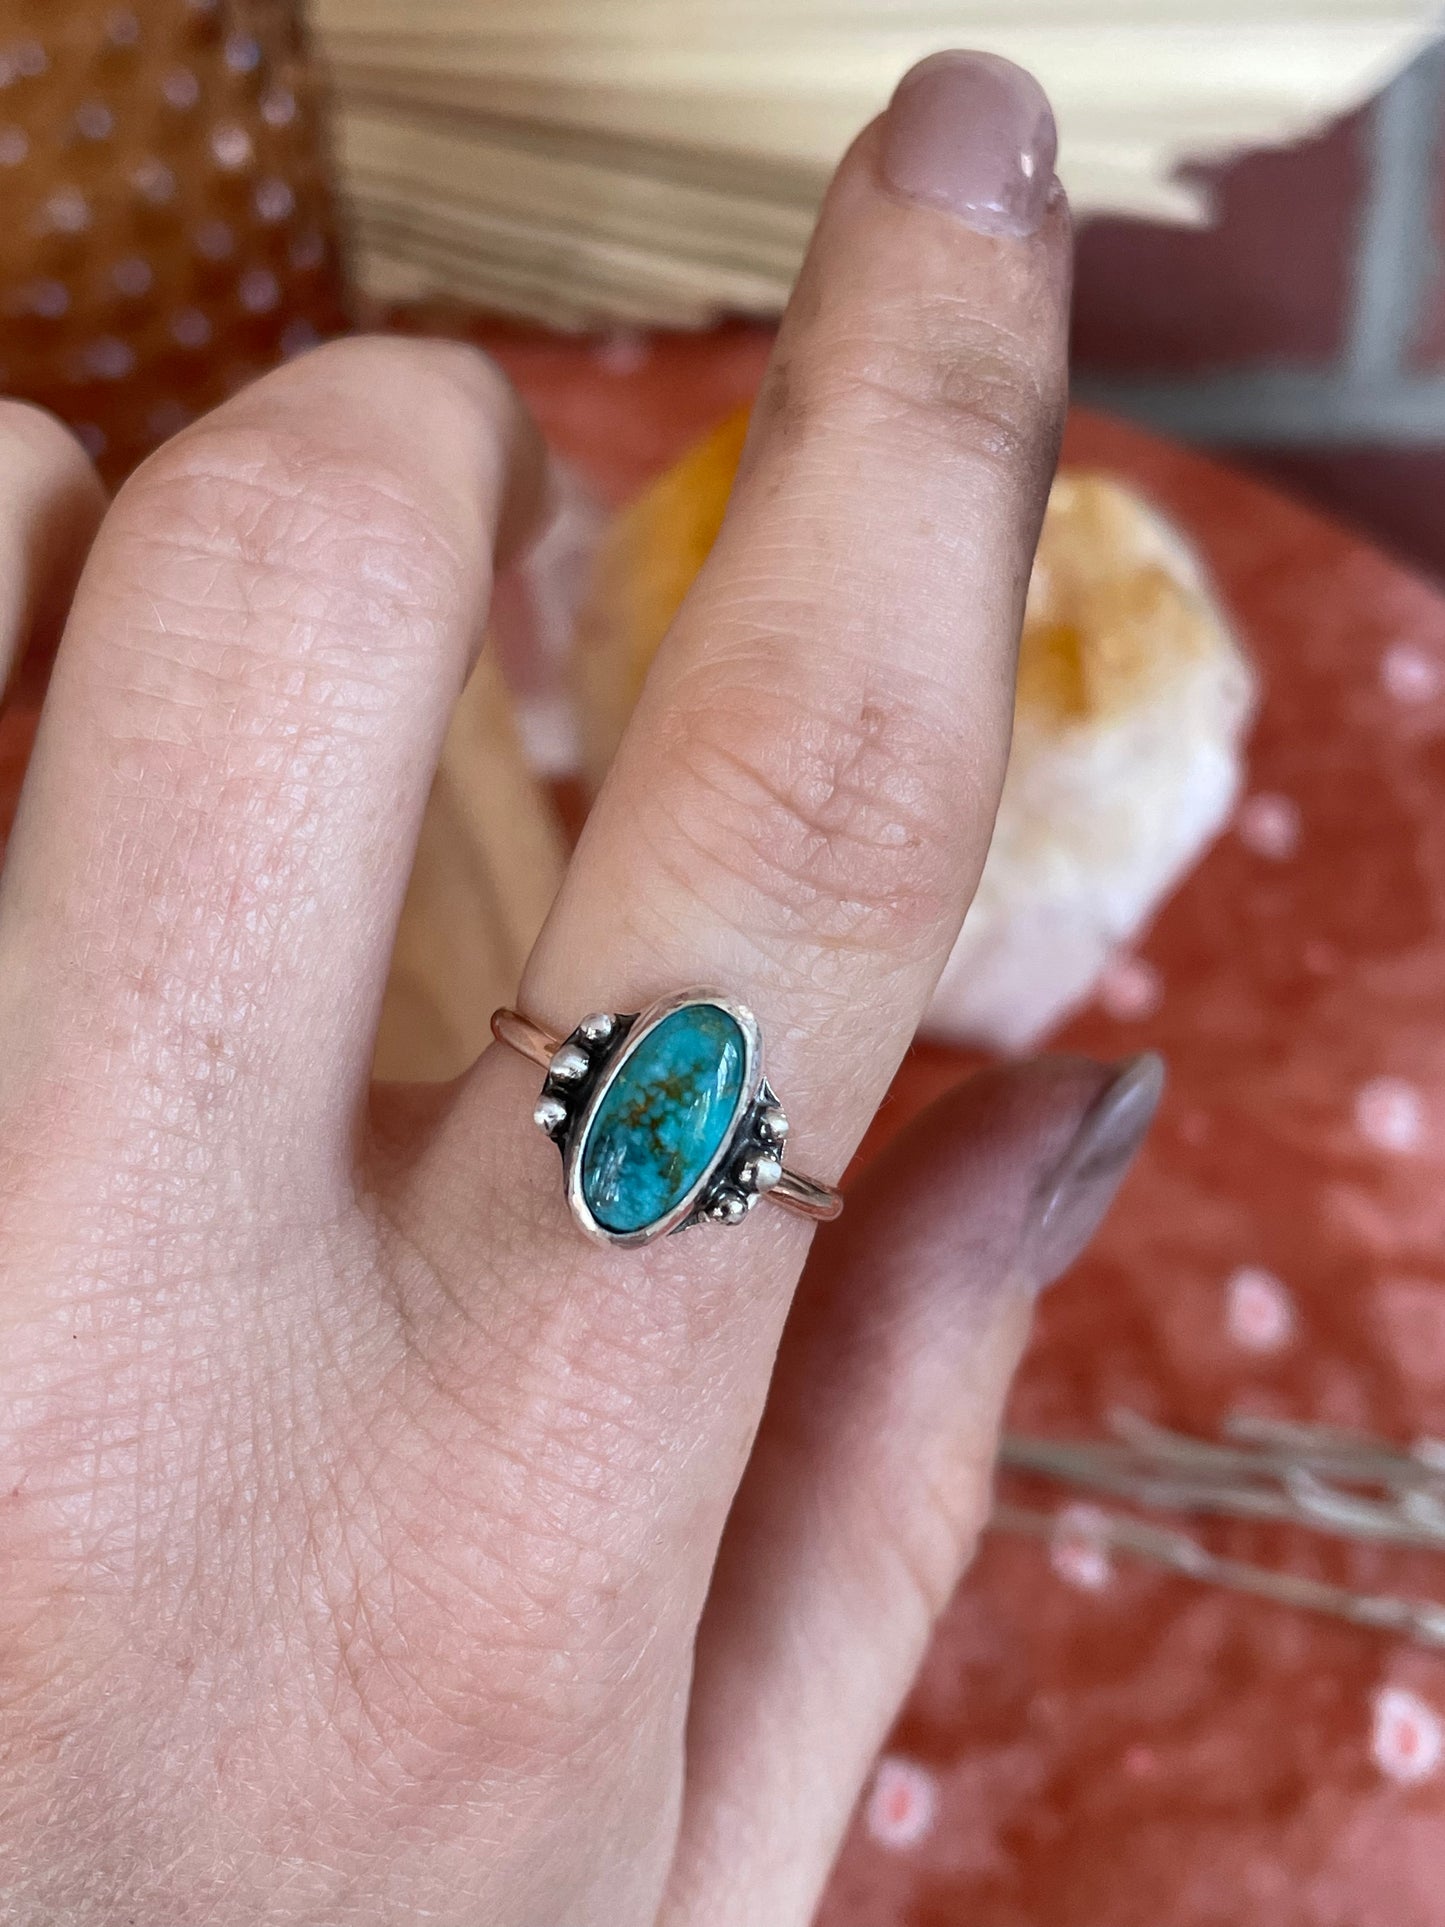 Carico Lake "Chelan" Turquoise ring - size 6 1/4